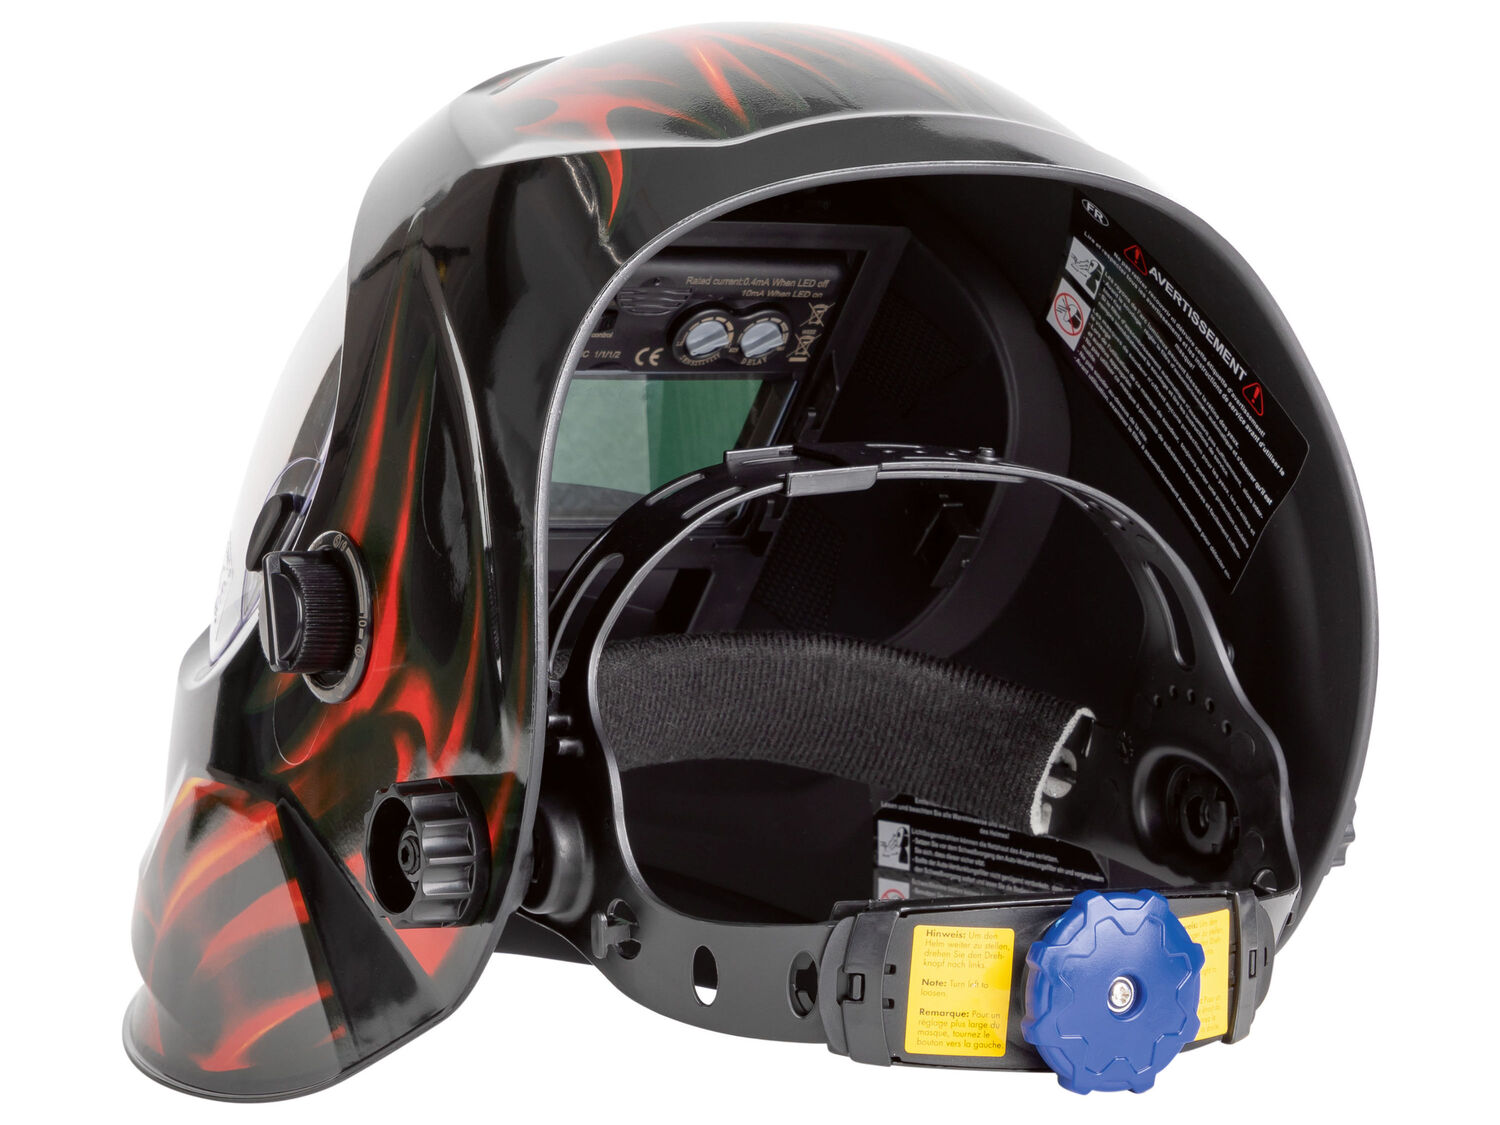 Maschera automatica da saldatore con LED Parkside, prezzo 29.99 &#8364; 
- Adatta ...